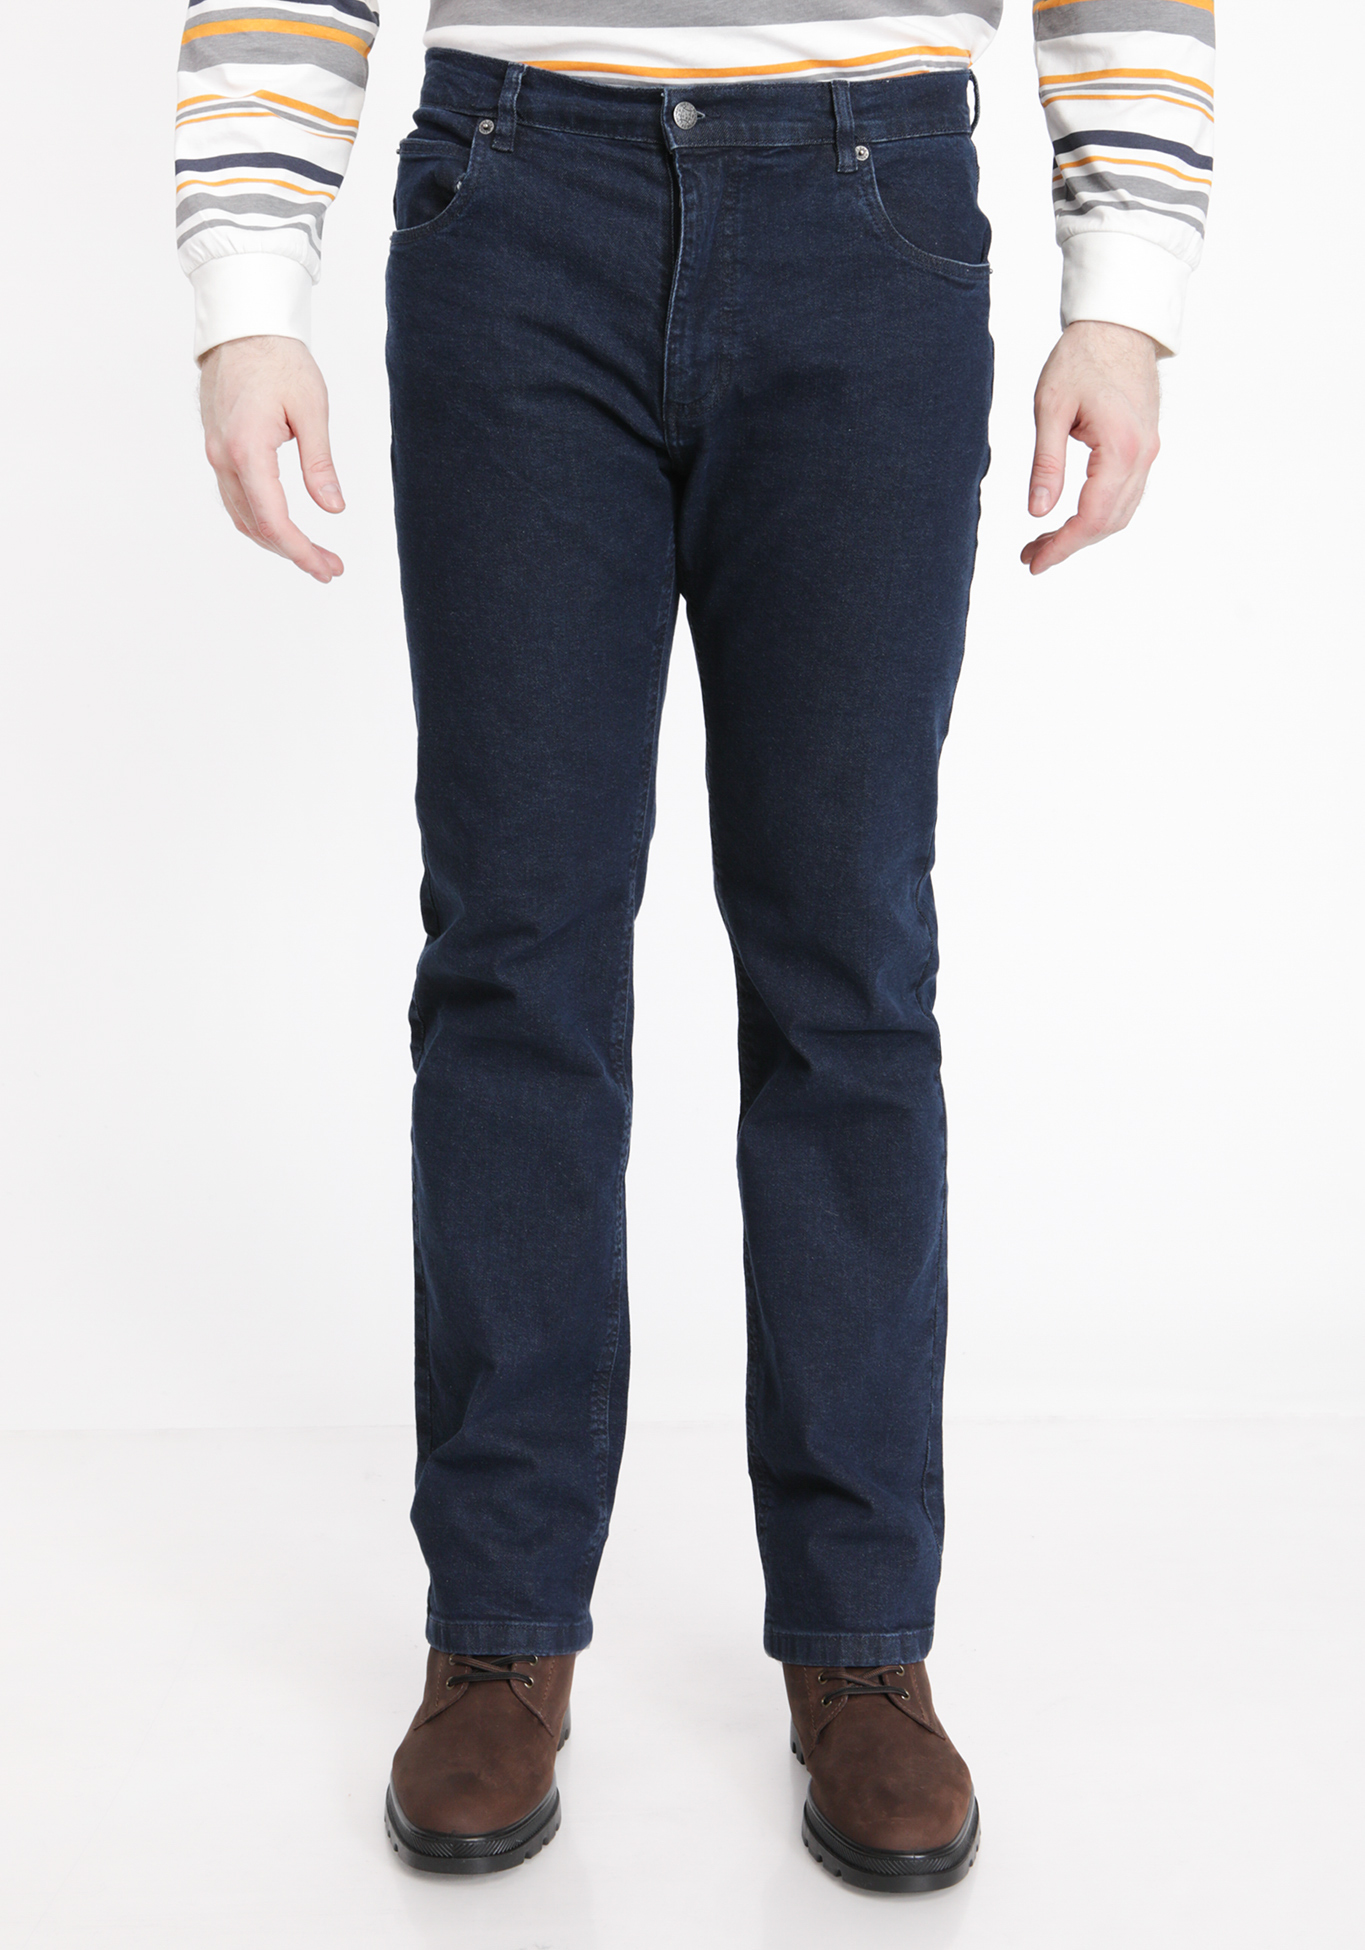 Джинсы классического кроя джинсы прямого кроя с вышивкой на кармане